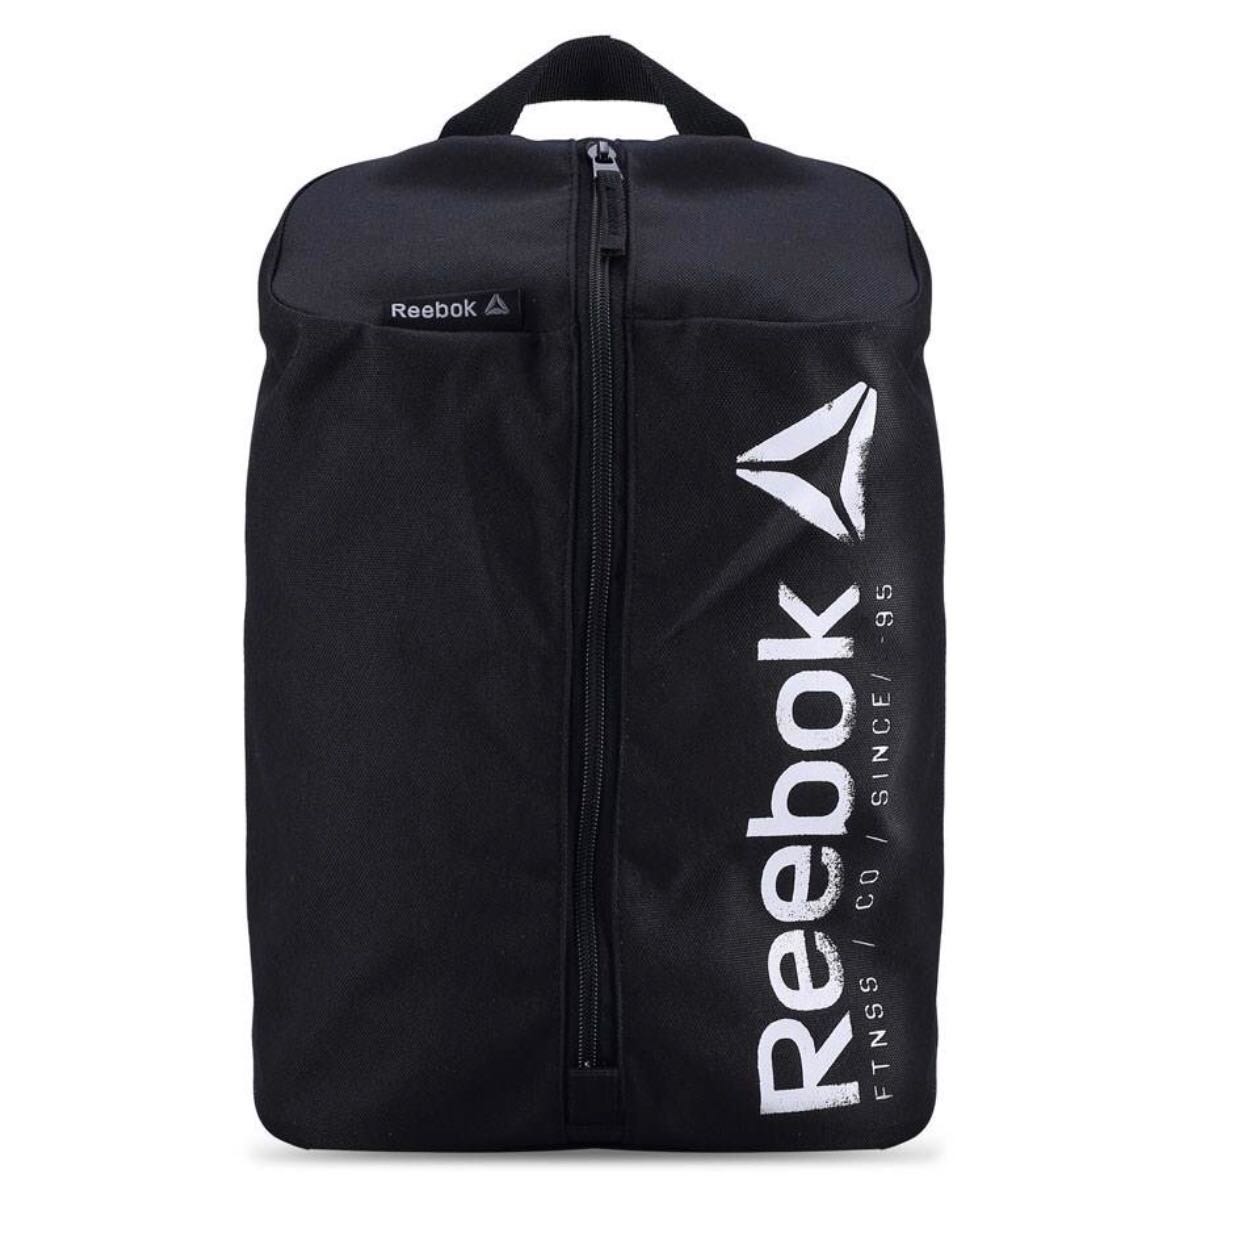 Authentic Reebok shoe bag, Men's 